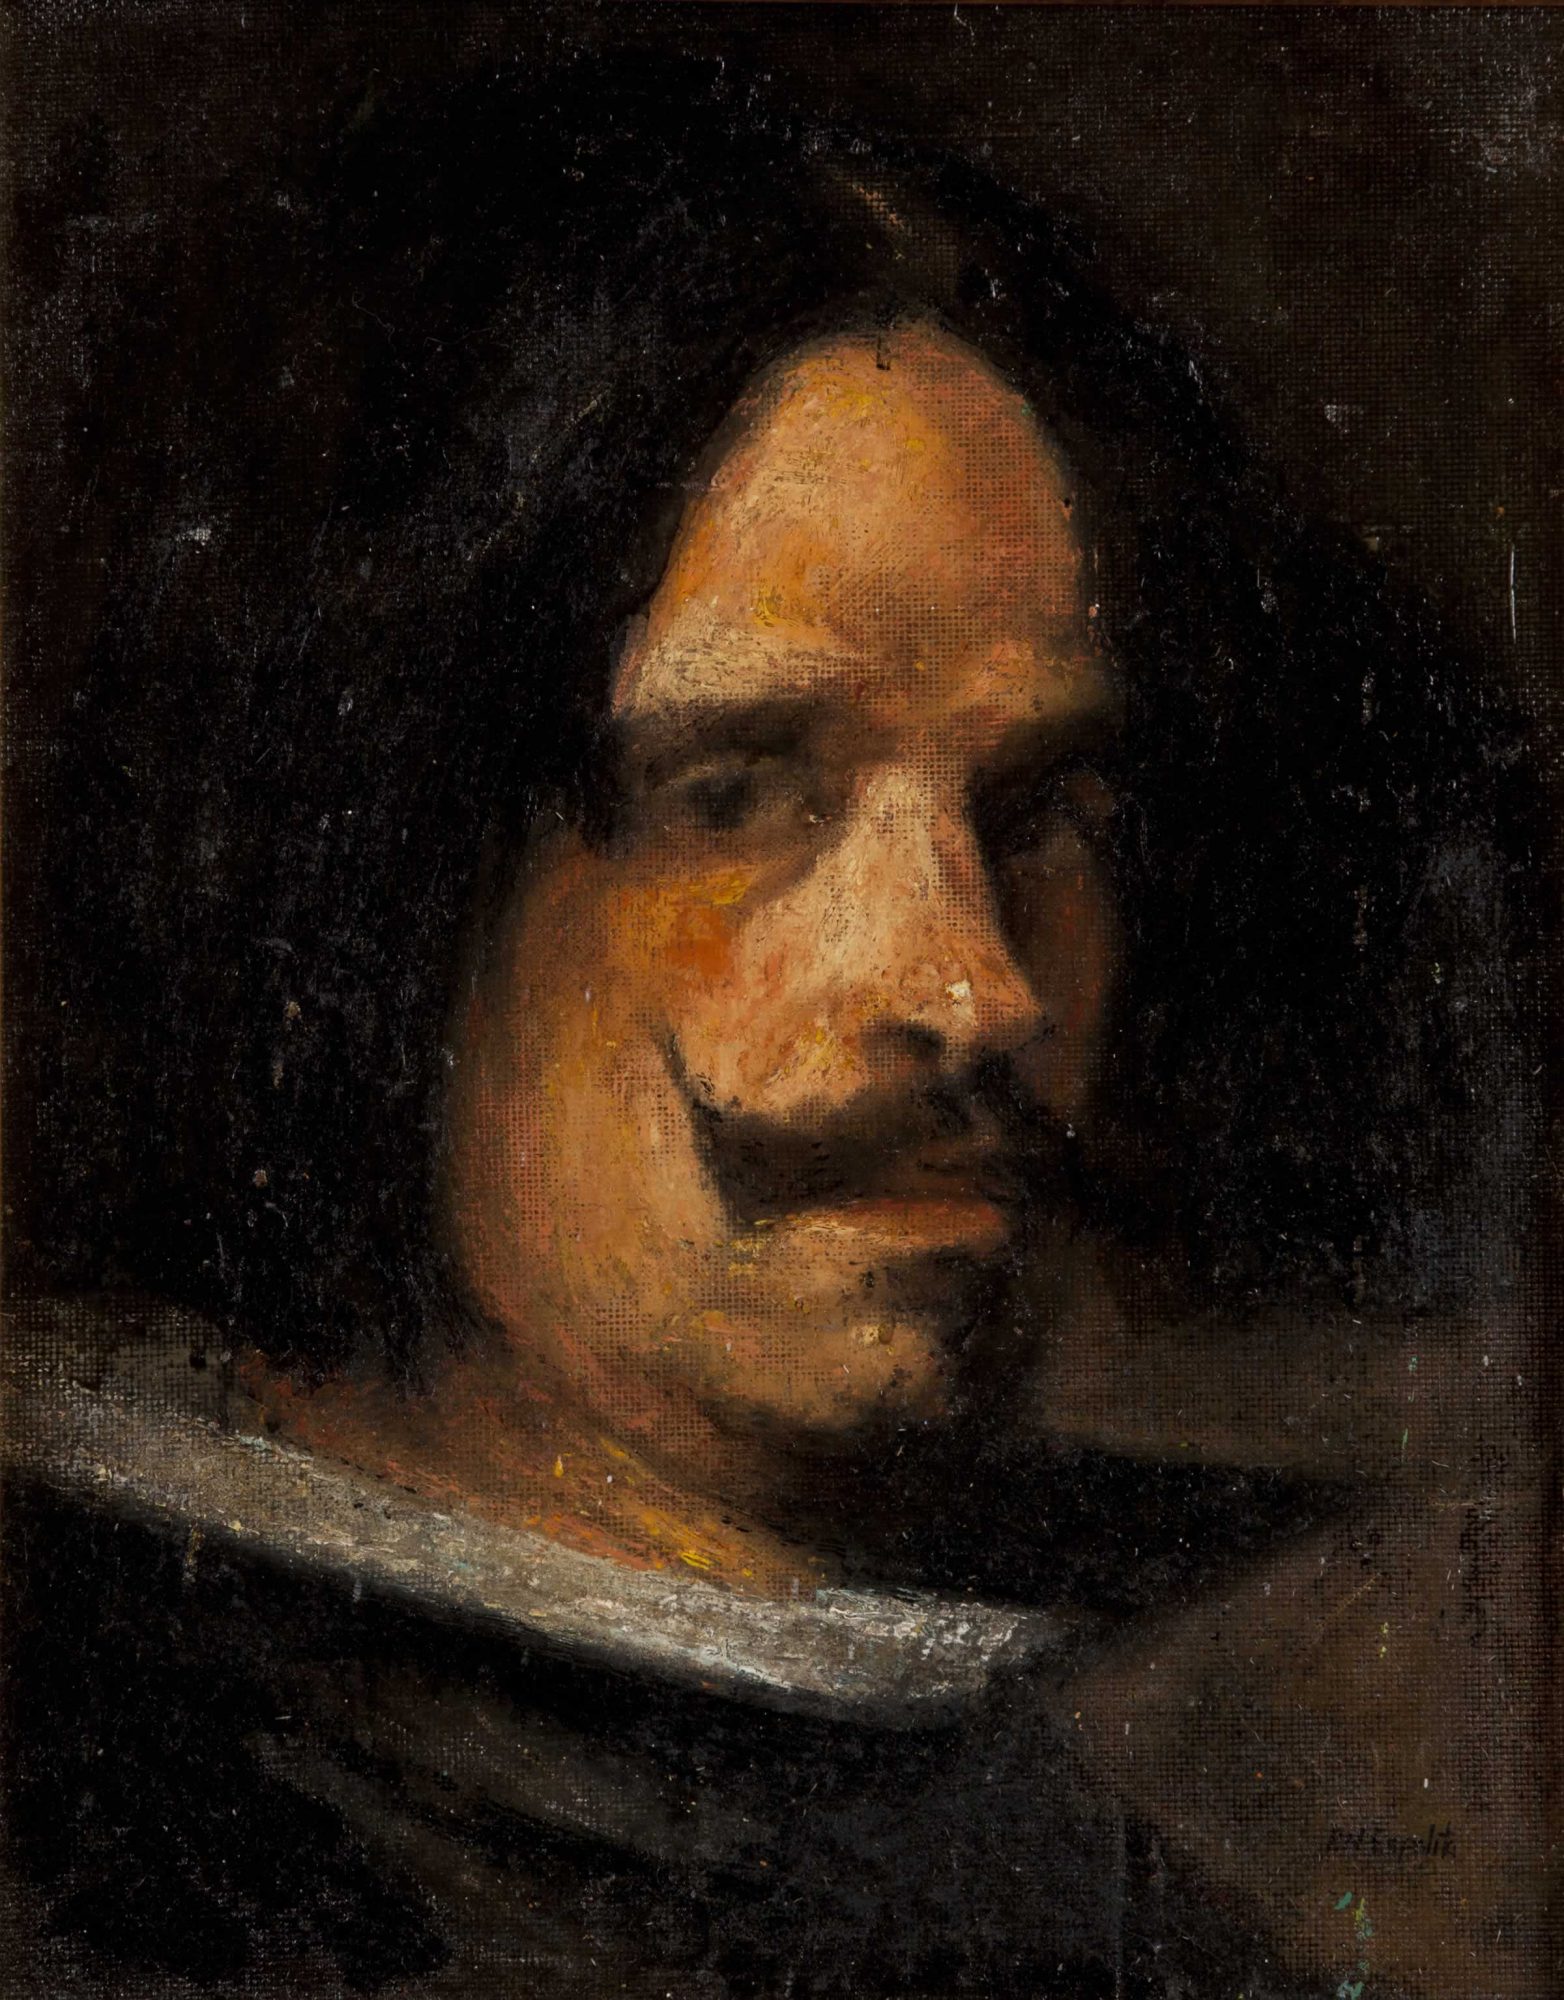 Velazquez's self portrait